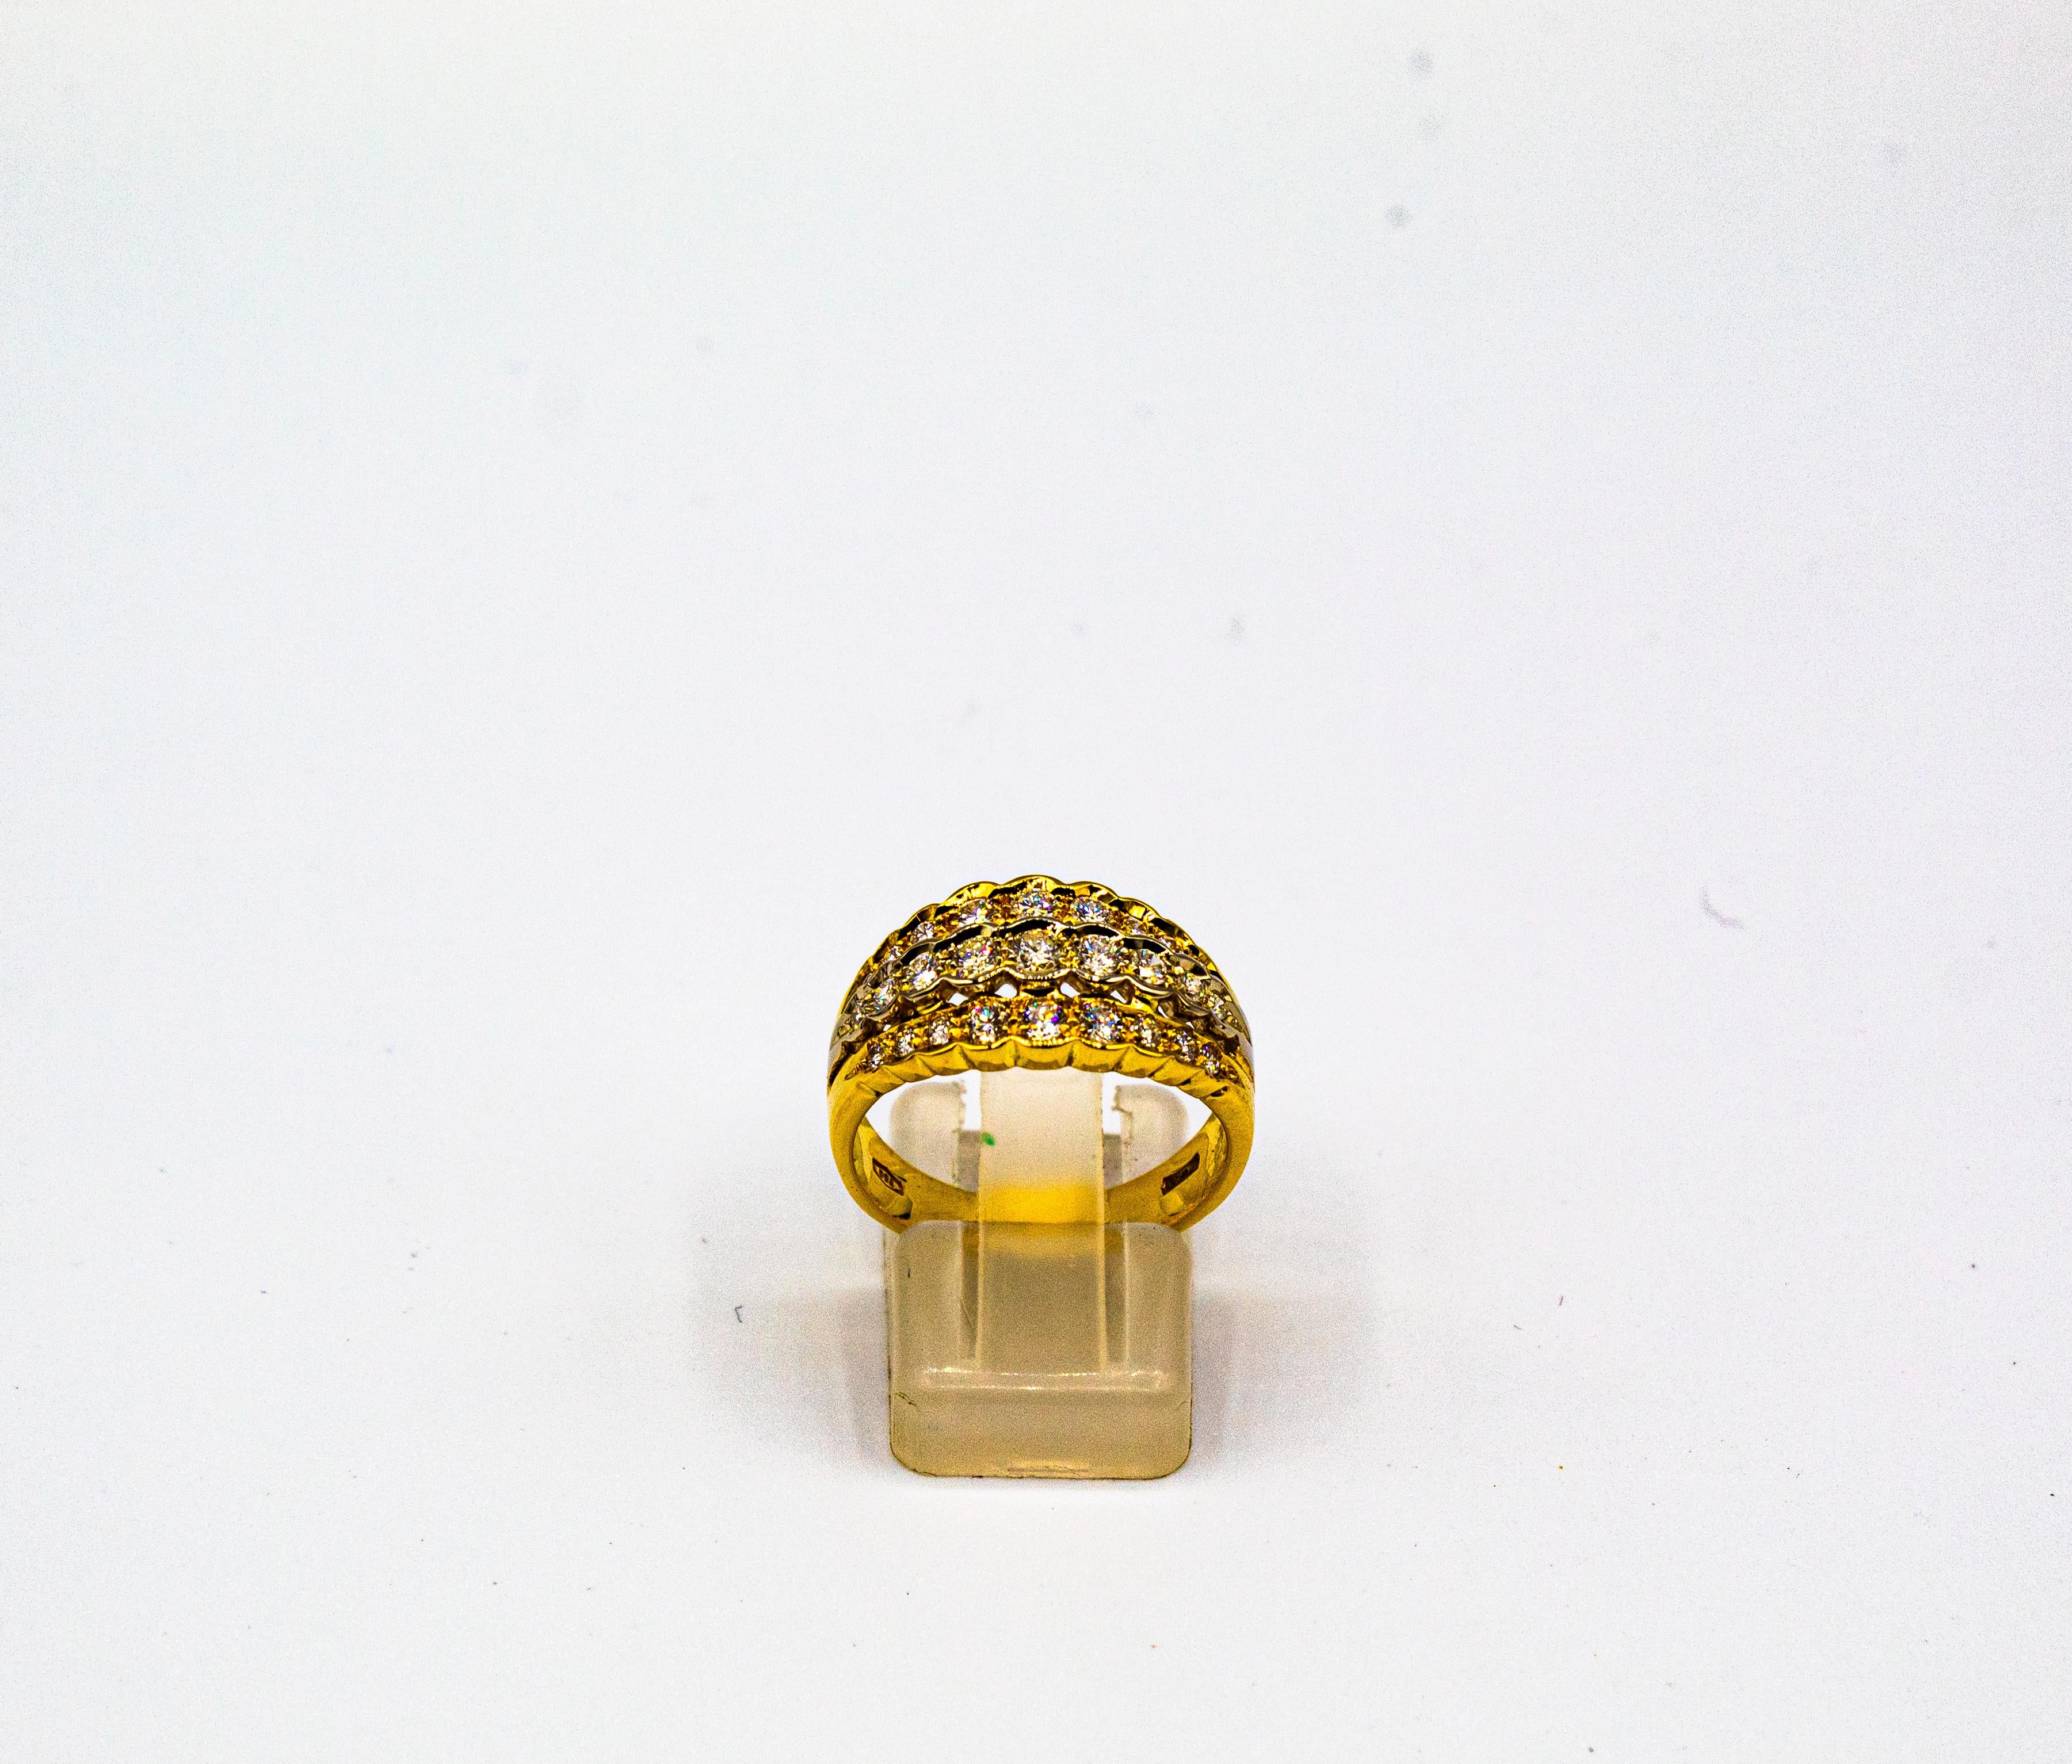 Dieser Ring ist aus 18K Weiß- und Gelbgold gefertigt.
Dieser Ring hat 0,80 Karat Diamanten im weißen Brillantschliff.

Größe ITA: 16 1/2 USA: 7 1/2

Da wir eine Werkstatt sind, ist jedes Stück handgefertigt, anpassbar und in der Größe veränderbar.